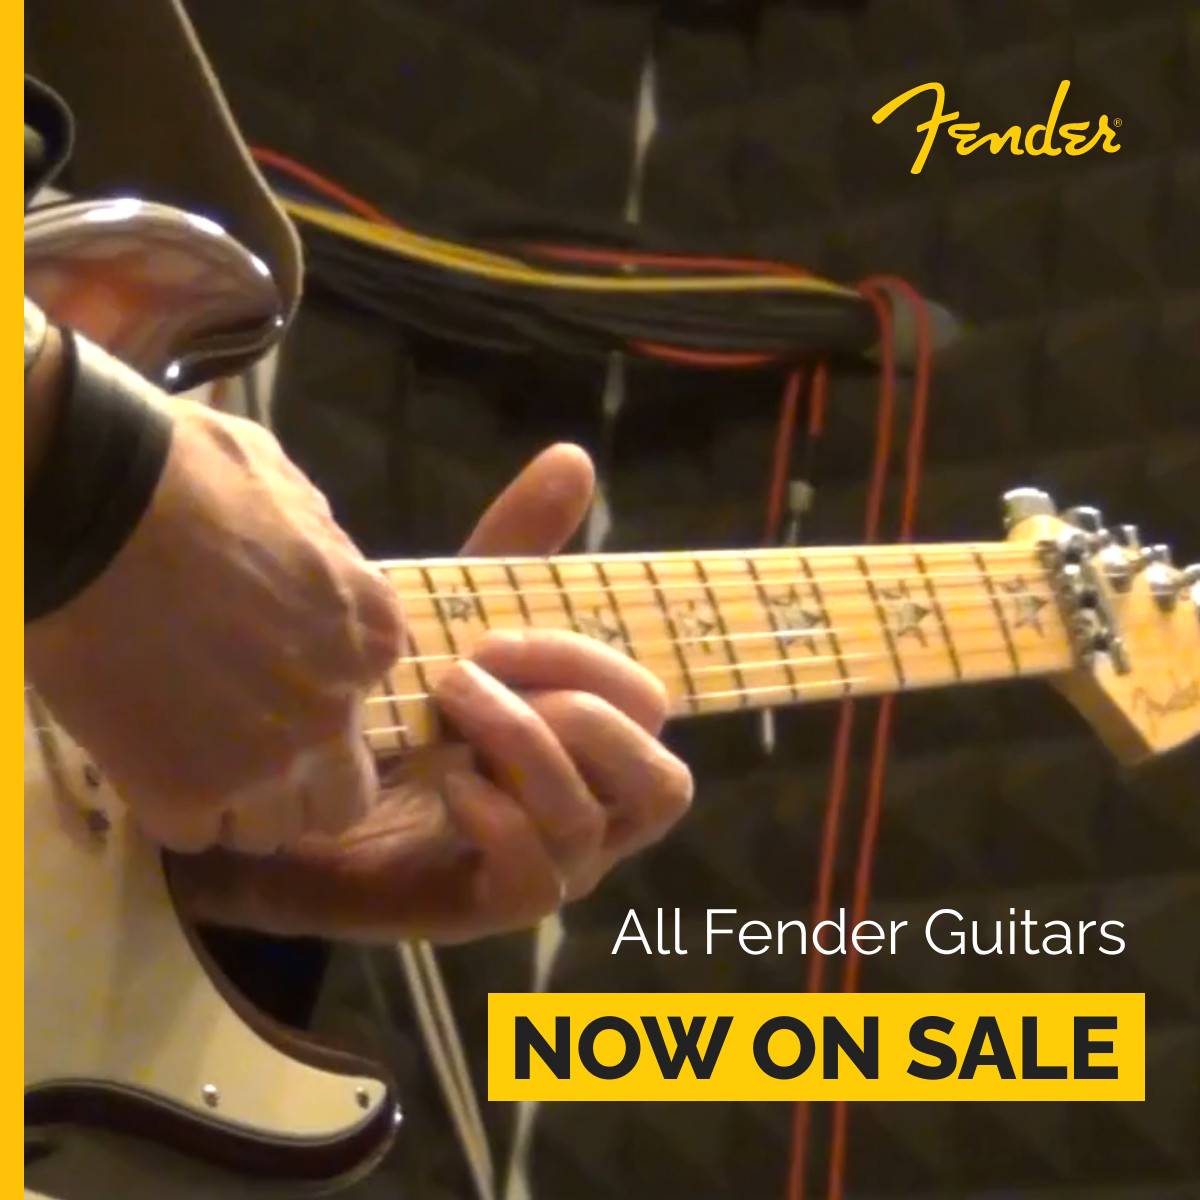 Fender Guitars On Sale Video